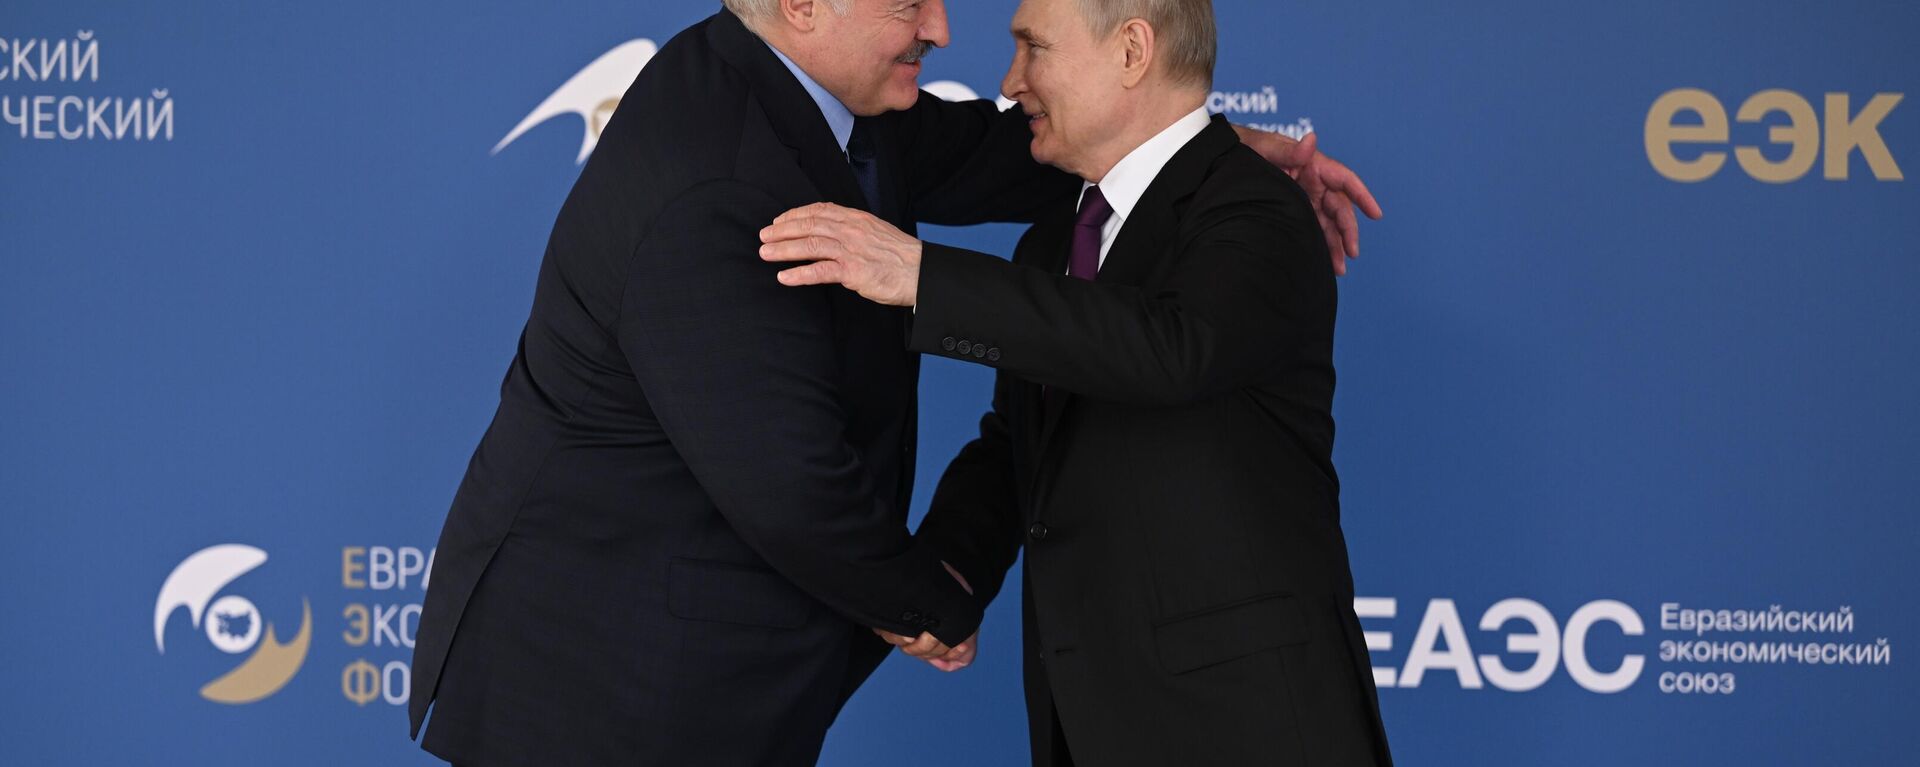 Руски председник Владимир Путин и белоруски лидер Александар Лукашенко на Евроазијском економском форуму у Москви - Sputnik Србија, 1920, 25.05.2023